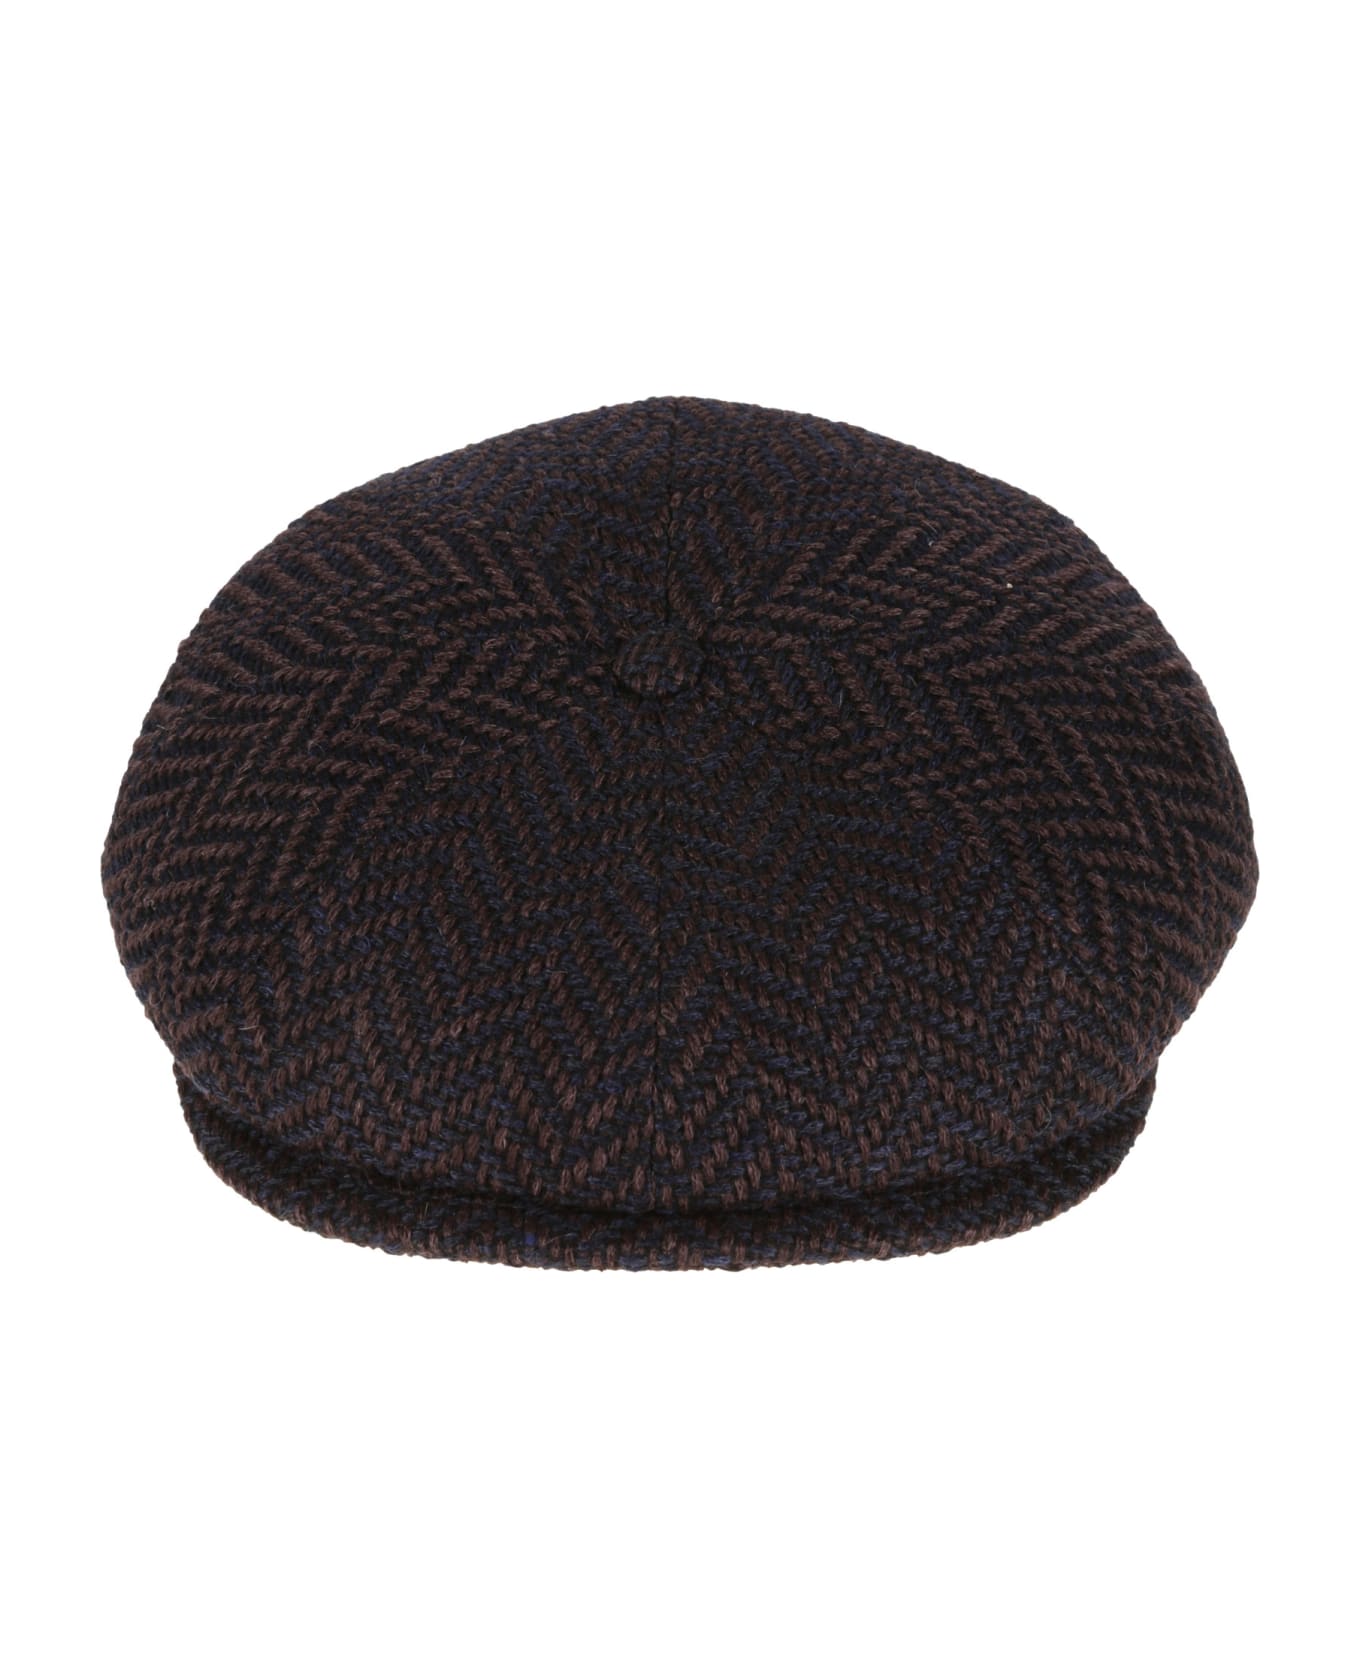 Borsalino Eight Piece Cap - A 帽子